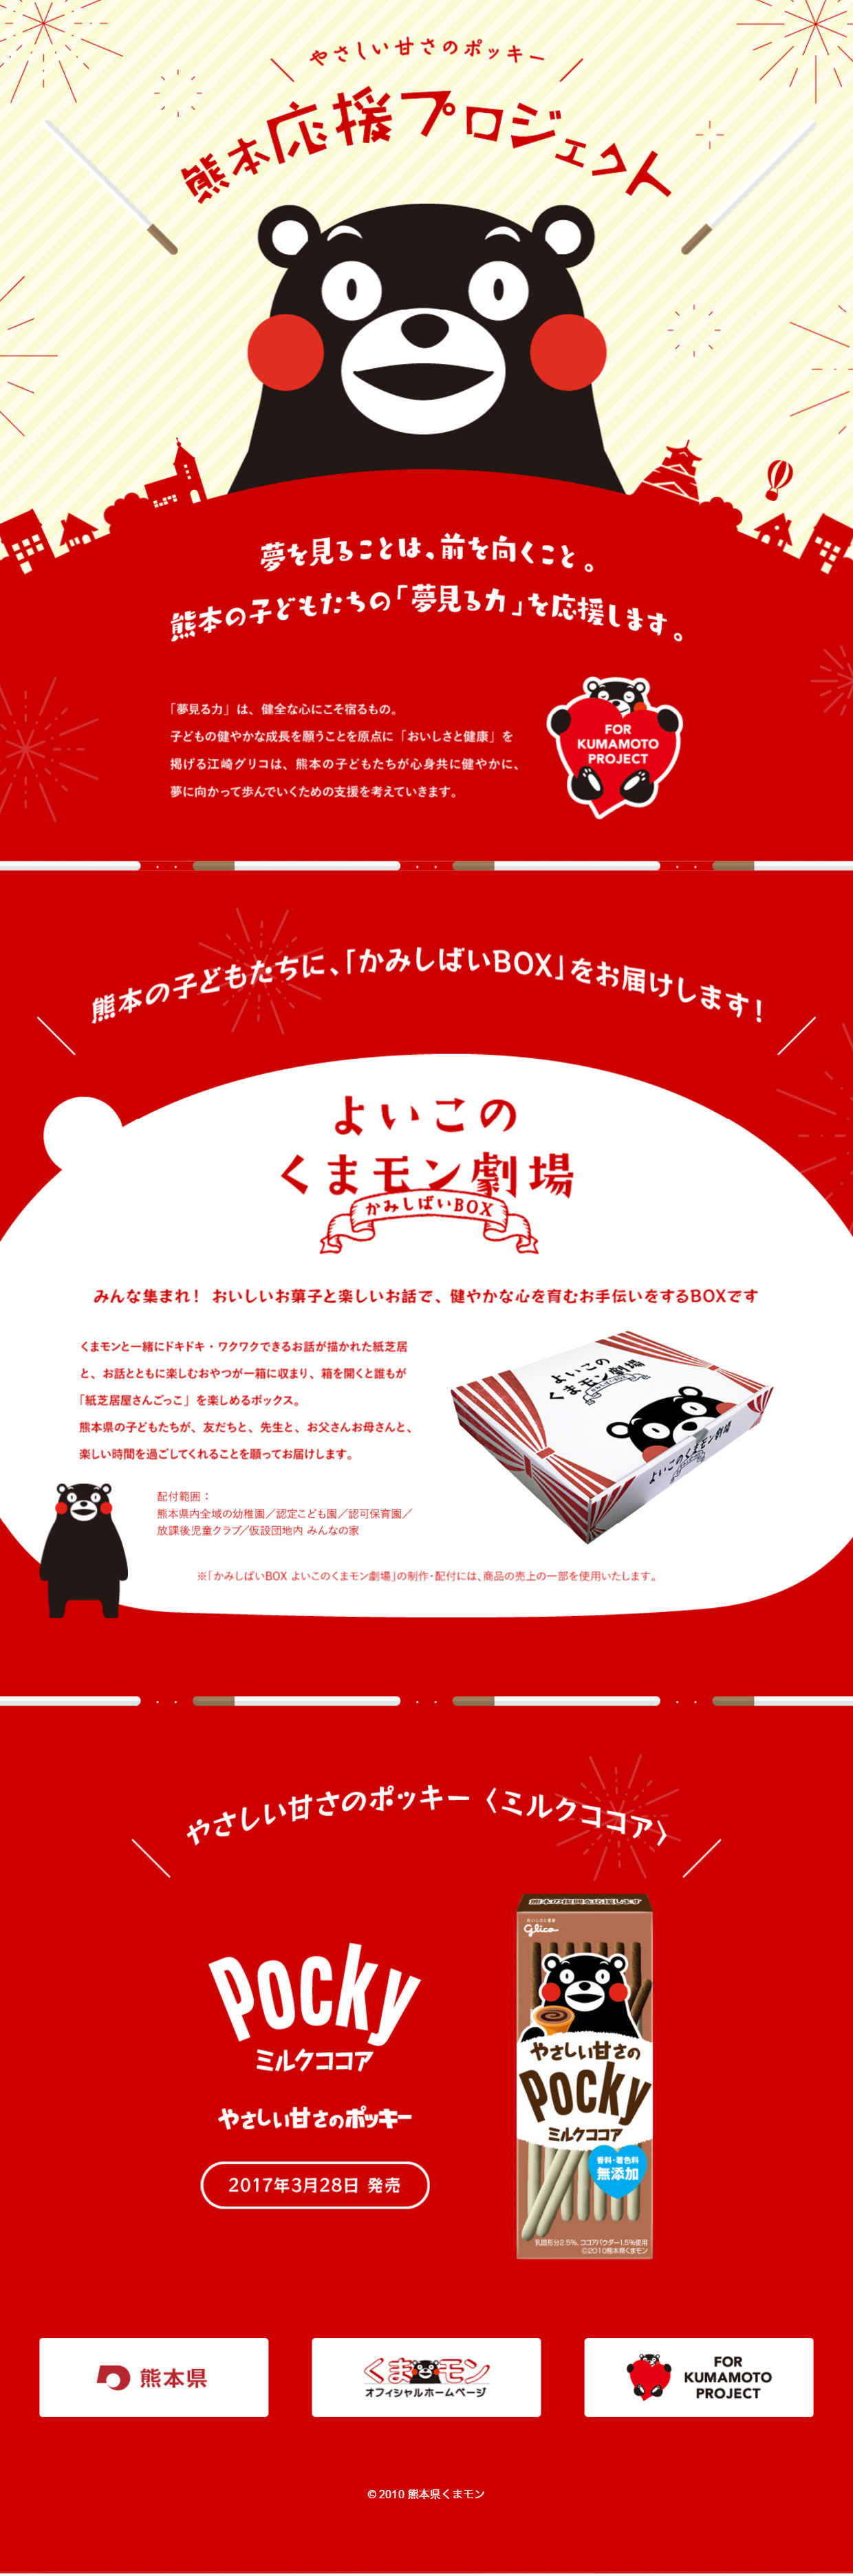 やさしい甘さのポッキー 熊本応援プロジェクト_pc_1